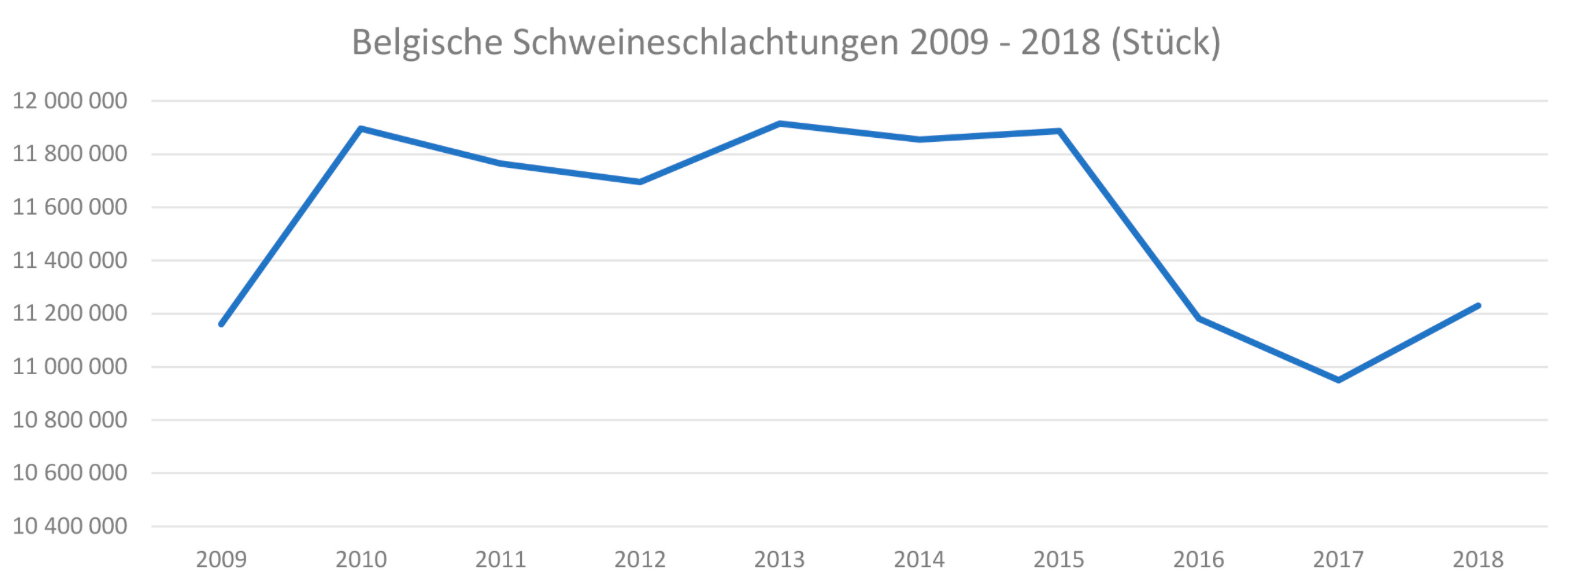 Belgische_Schweineschlachtungen_2009-2018.png